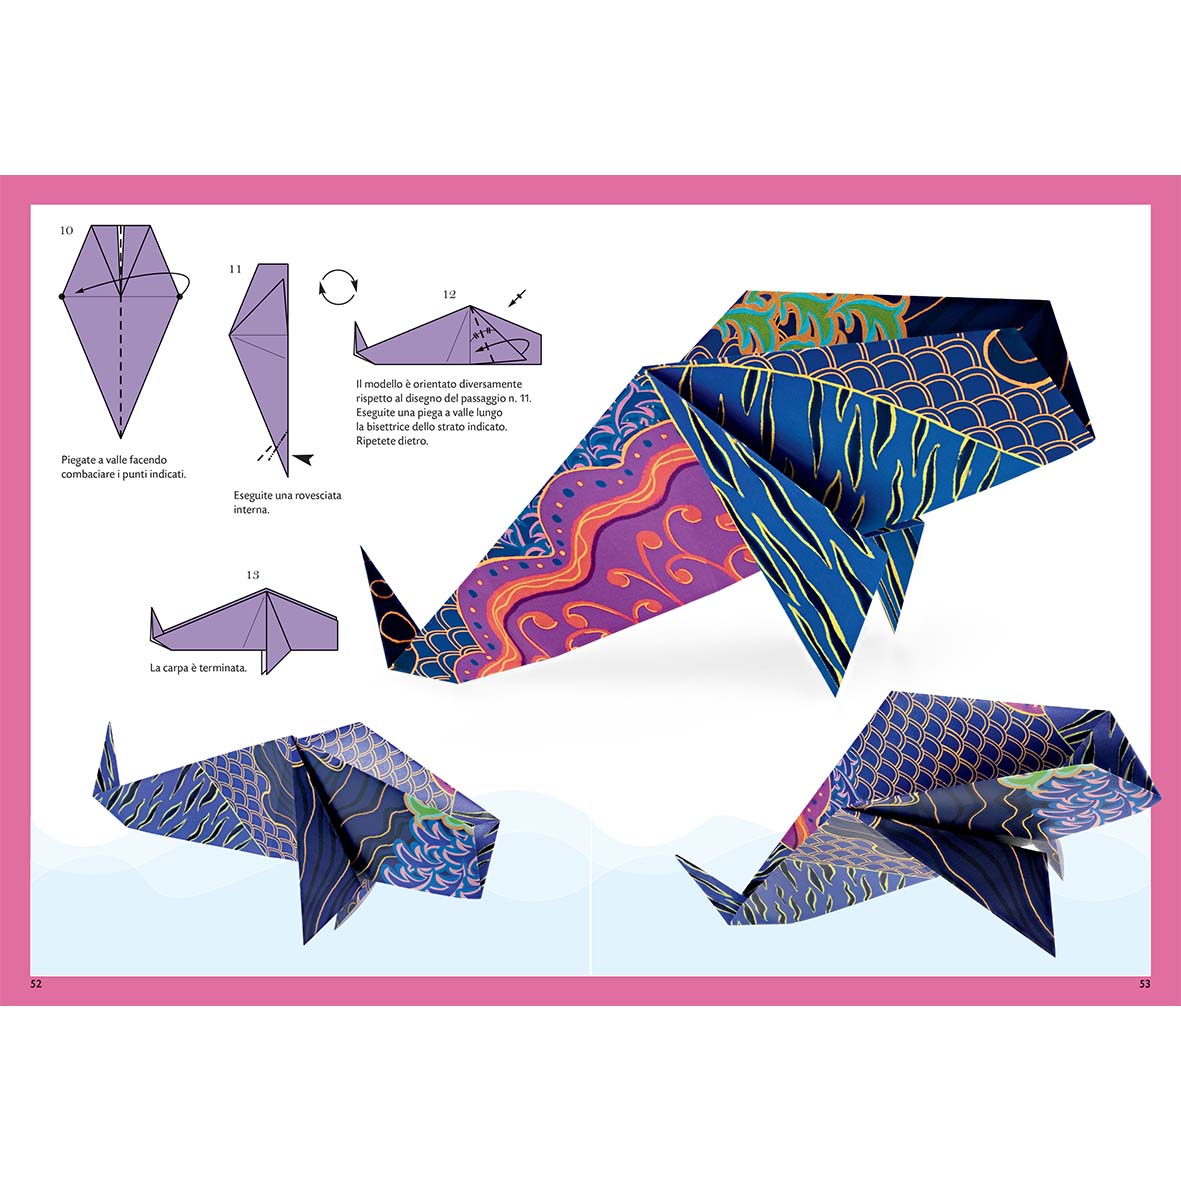 Il grande libro degli origami tradizionali giapponesi - nuova edizione